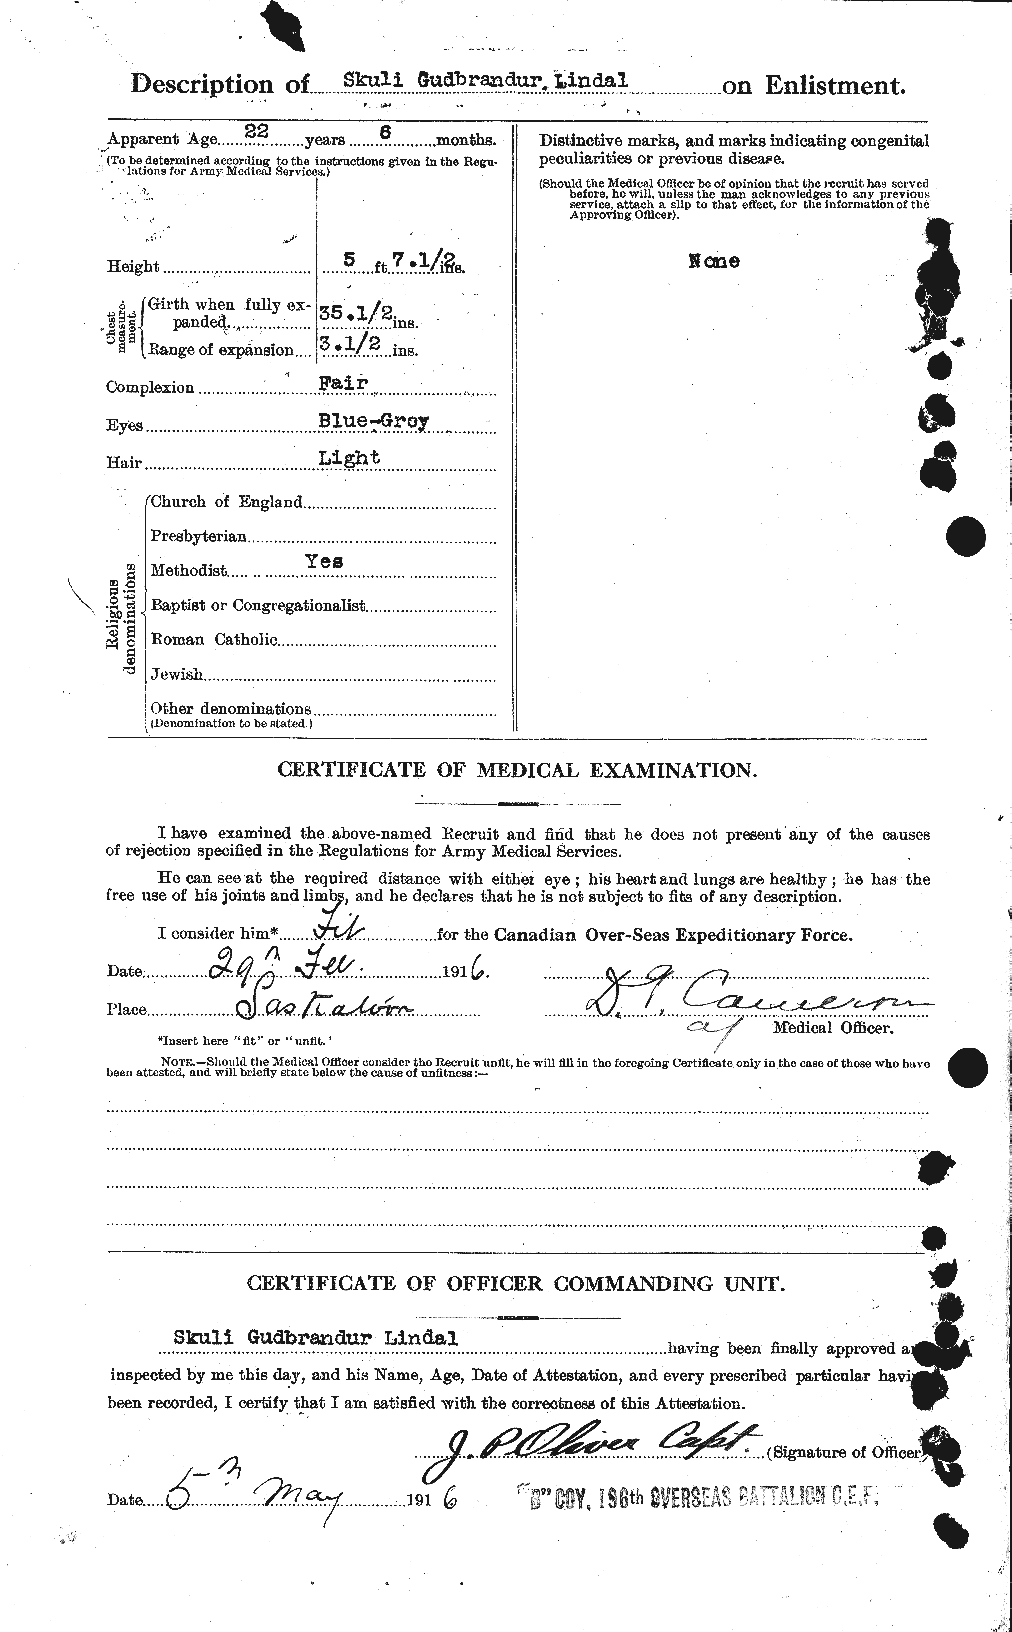 Dossiers du Personnel de la Première Guerre mondiale - CEC 467647b